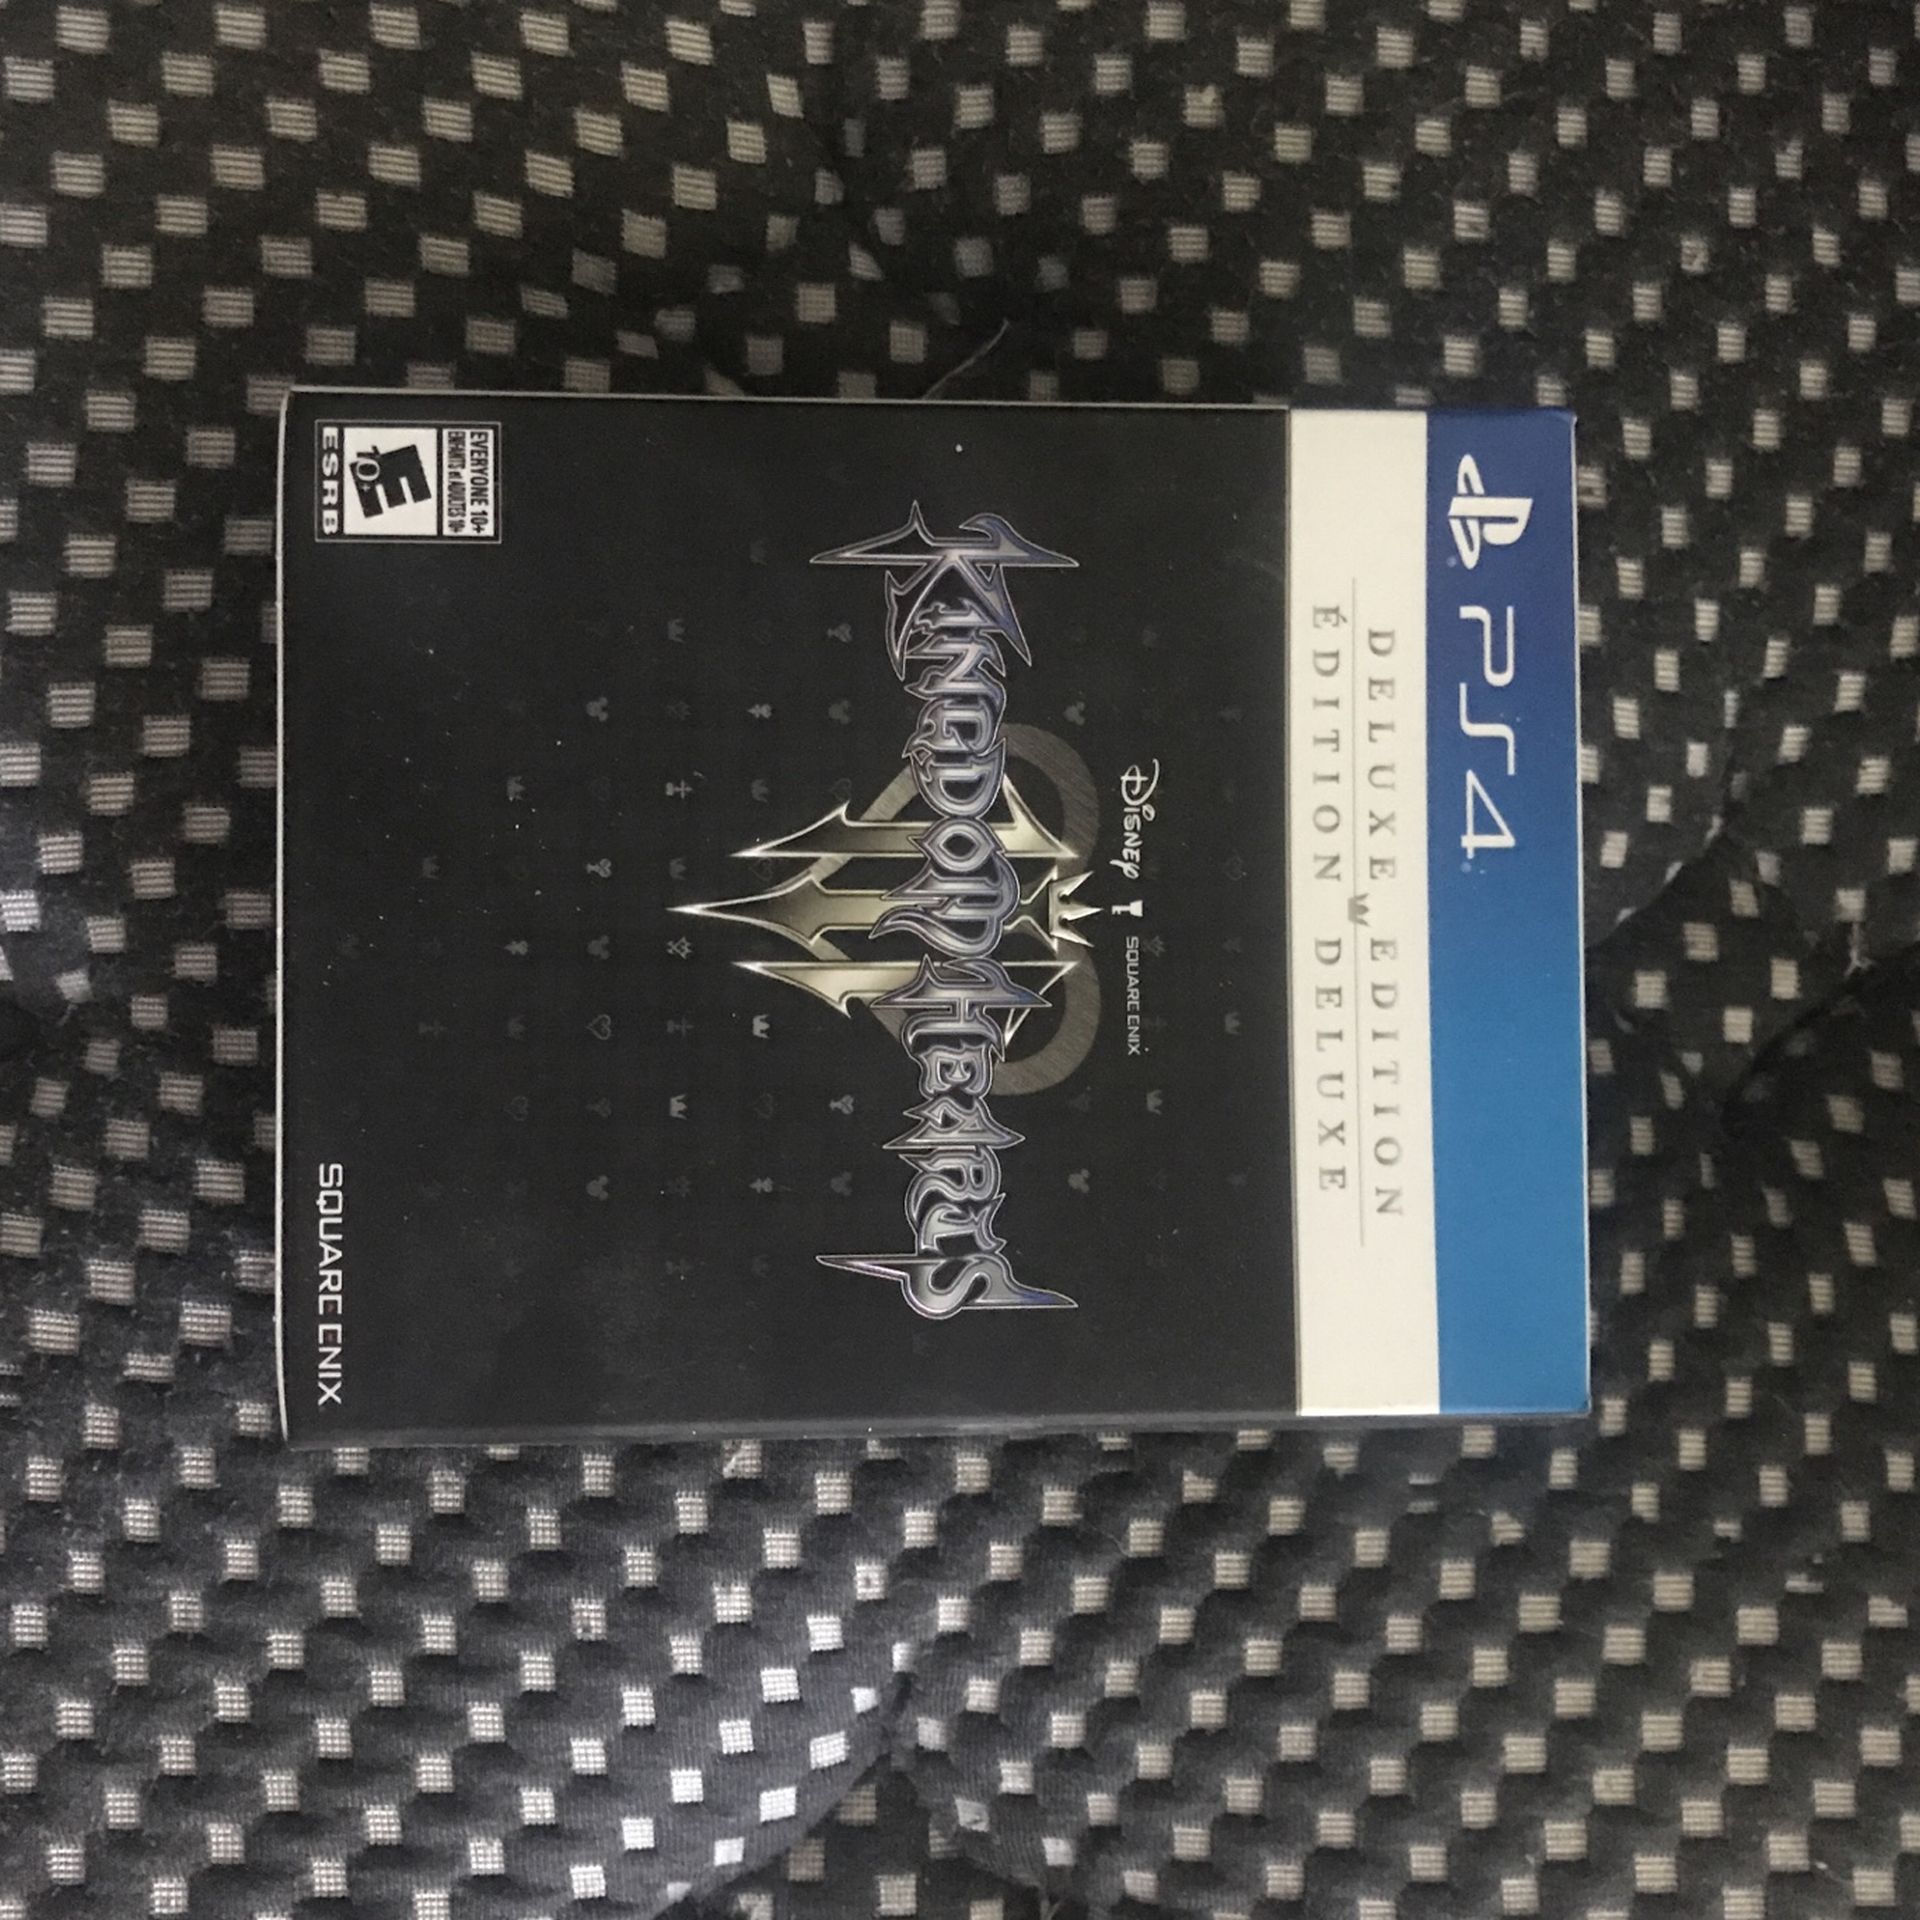 Kingdom Hearts 3 Deluxe Collectors Edition